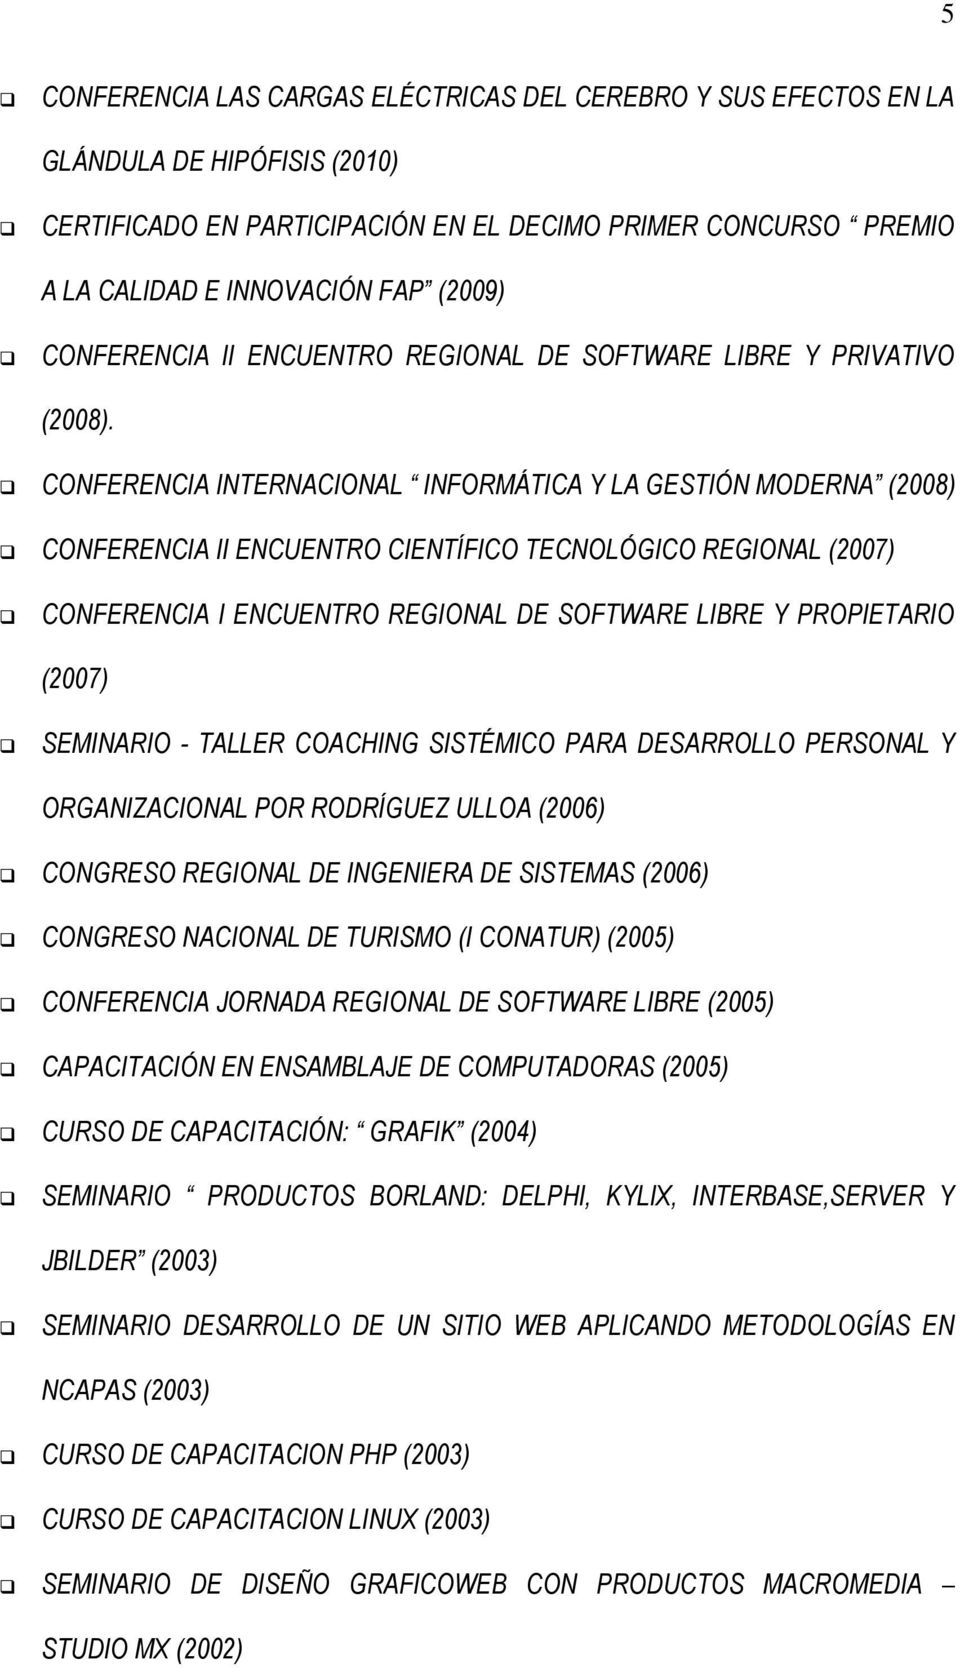 CONFERENCIA INTERNACIONAL INFORMÁTICA Y LA GESTIÓN MODERNA (2008) CONFERENCIA II ENCUENTRO CIENTÍFICO TECNOLÓGICO REGIONAL (2007) CONFERENCIA I ENCUENTRO REGIONAL DE SOFTWARE LIBRE Y PROPIETARIO